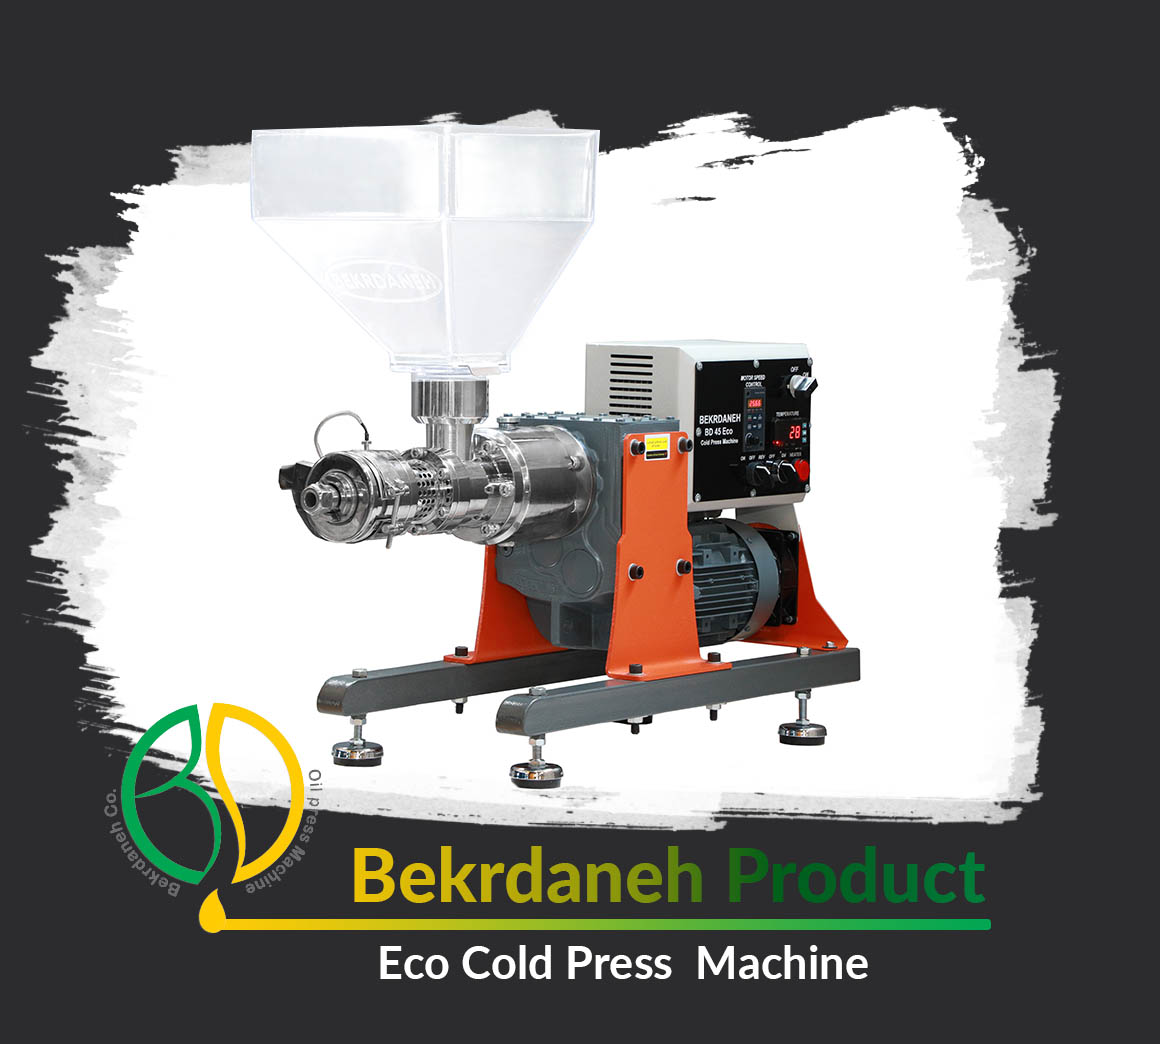 BD 45 Eco Cold Press Machine